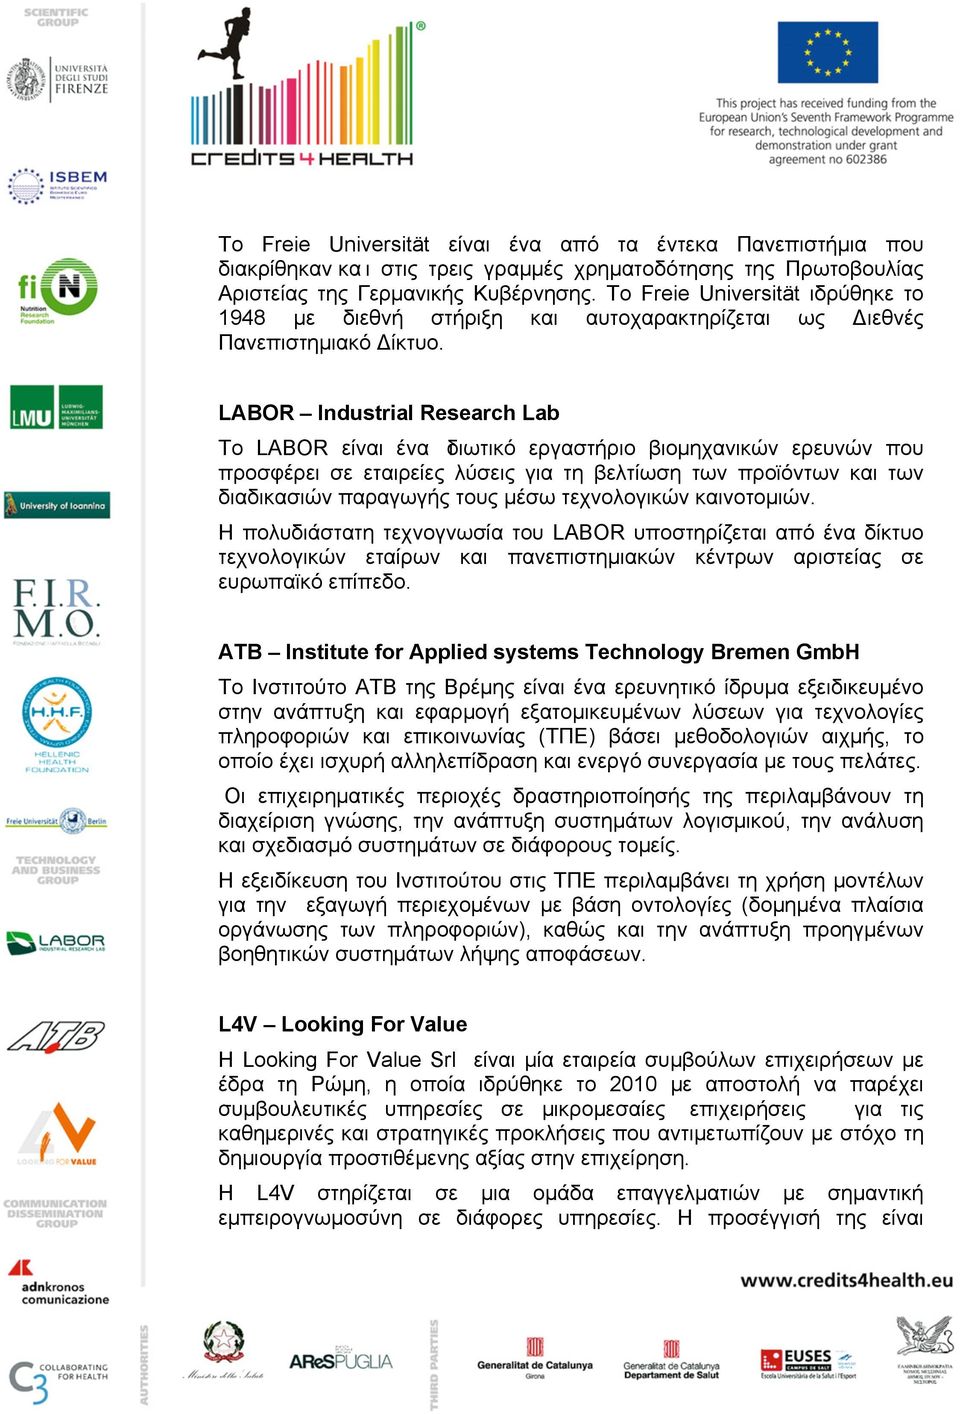 LABOR Industrial Research Lab Το LABOR είναι ένα ιδιωτικό εργαστήριο βιοµηχανικών ερευνών που προσφέρει σε εταιρείες λύσεις για τη βελτίωση των προϊόντων και των διαδικασιών παραγωγής τους µέσω